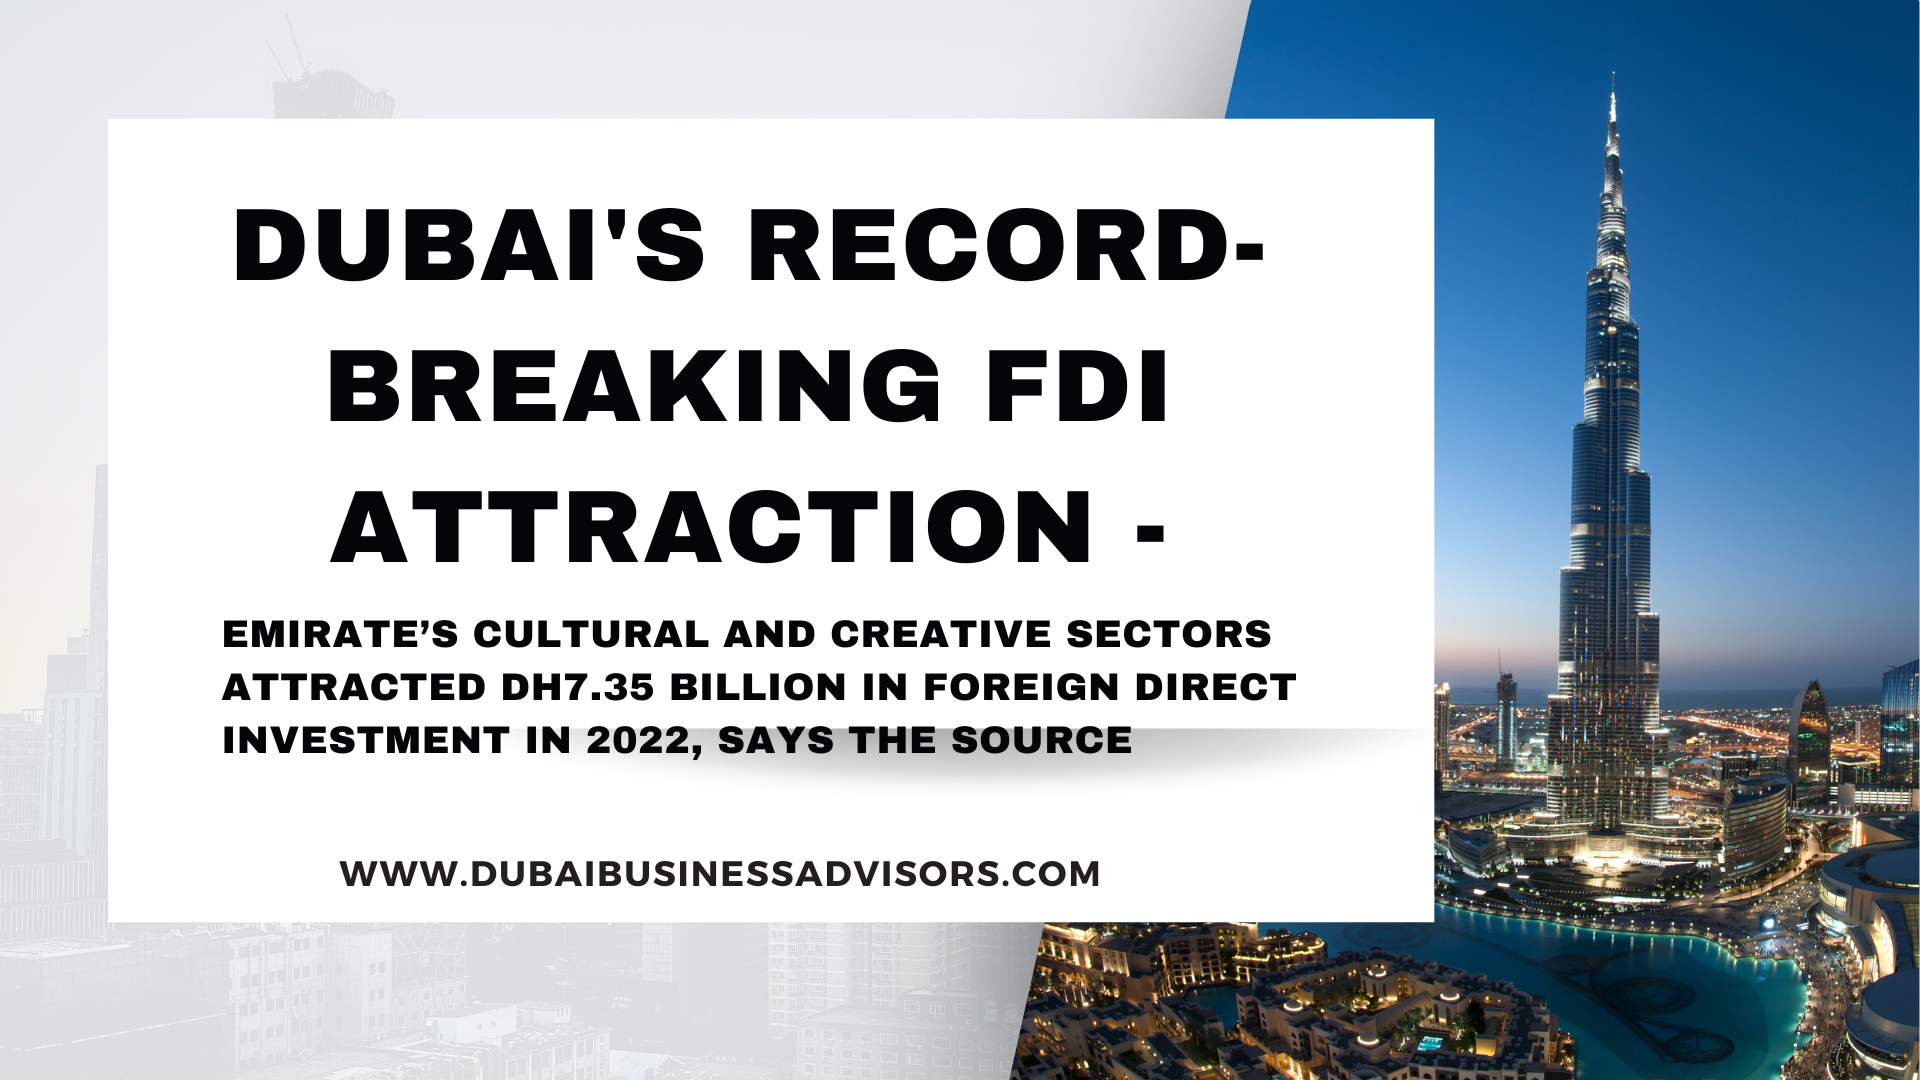 Dubai's Record-Breaking FDI Attraction